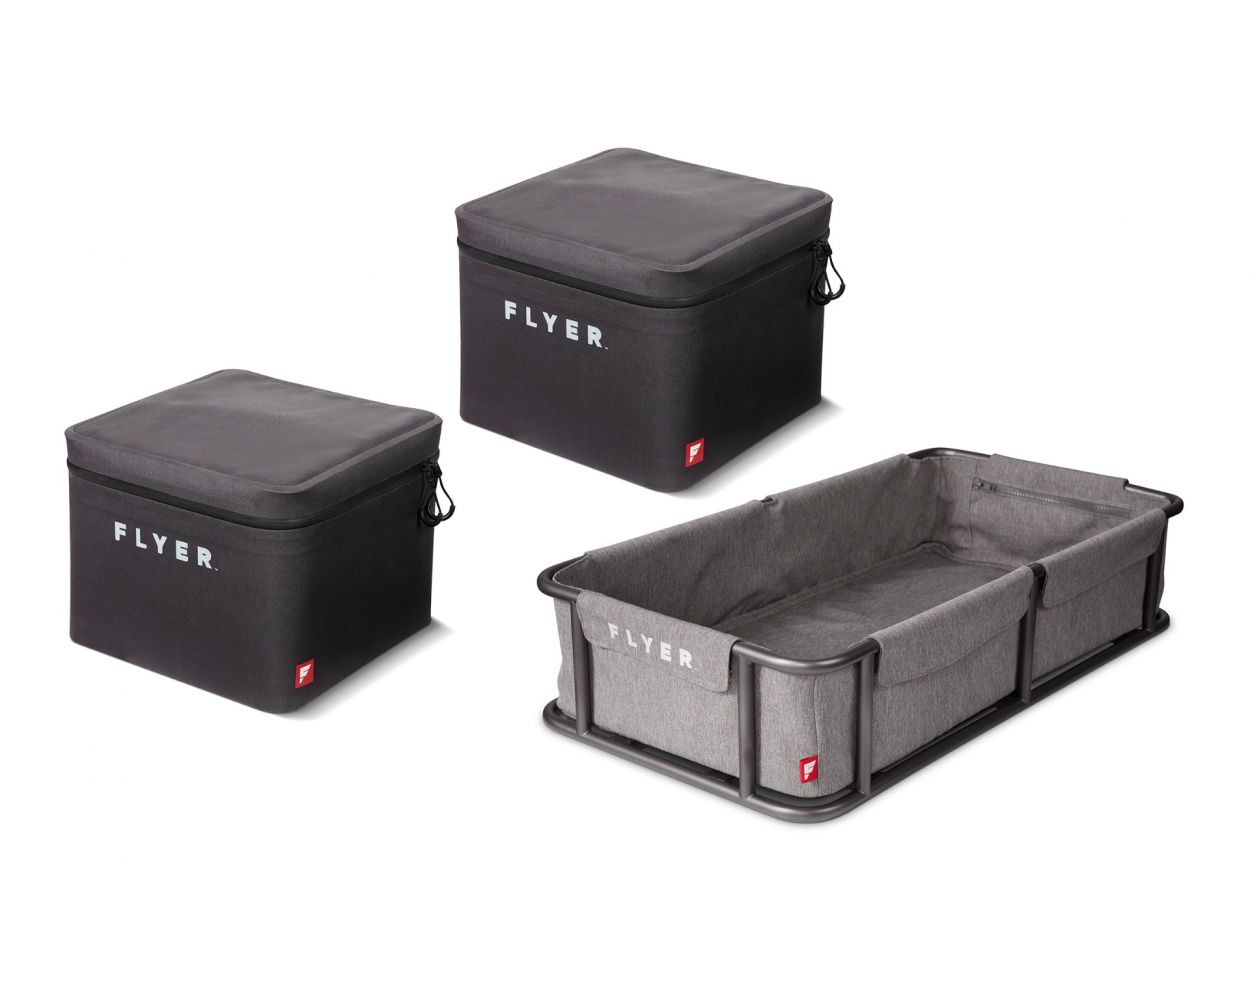 Waterproof Rear Storage Cases & Large Basket Bundle